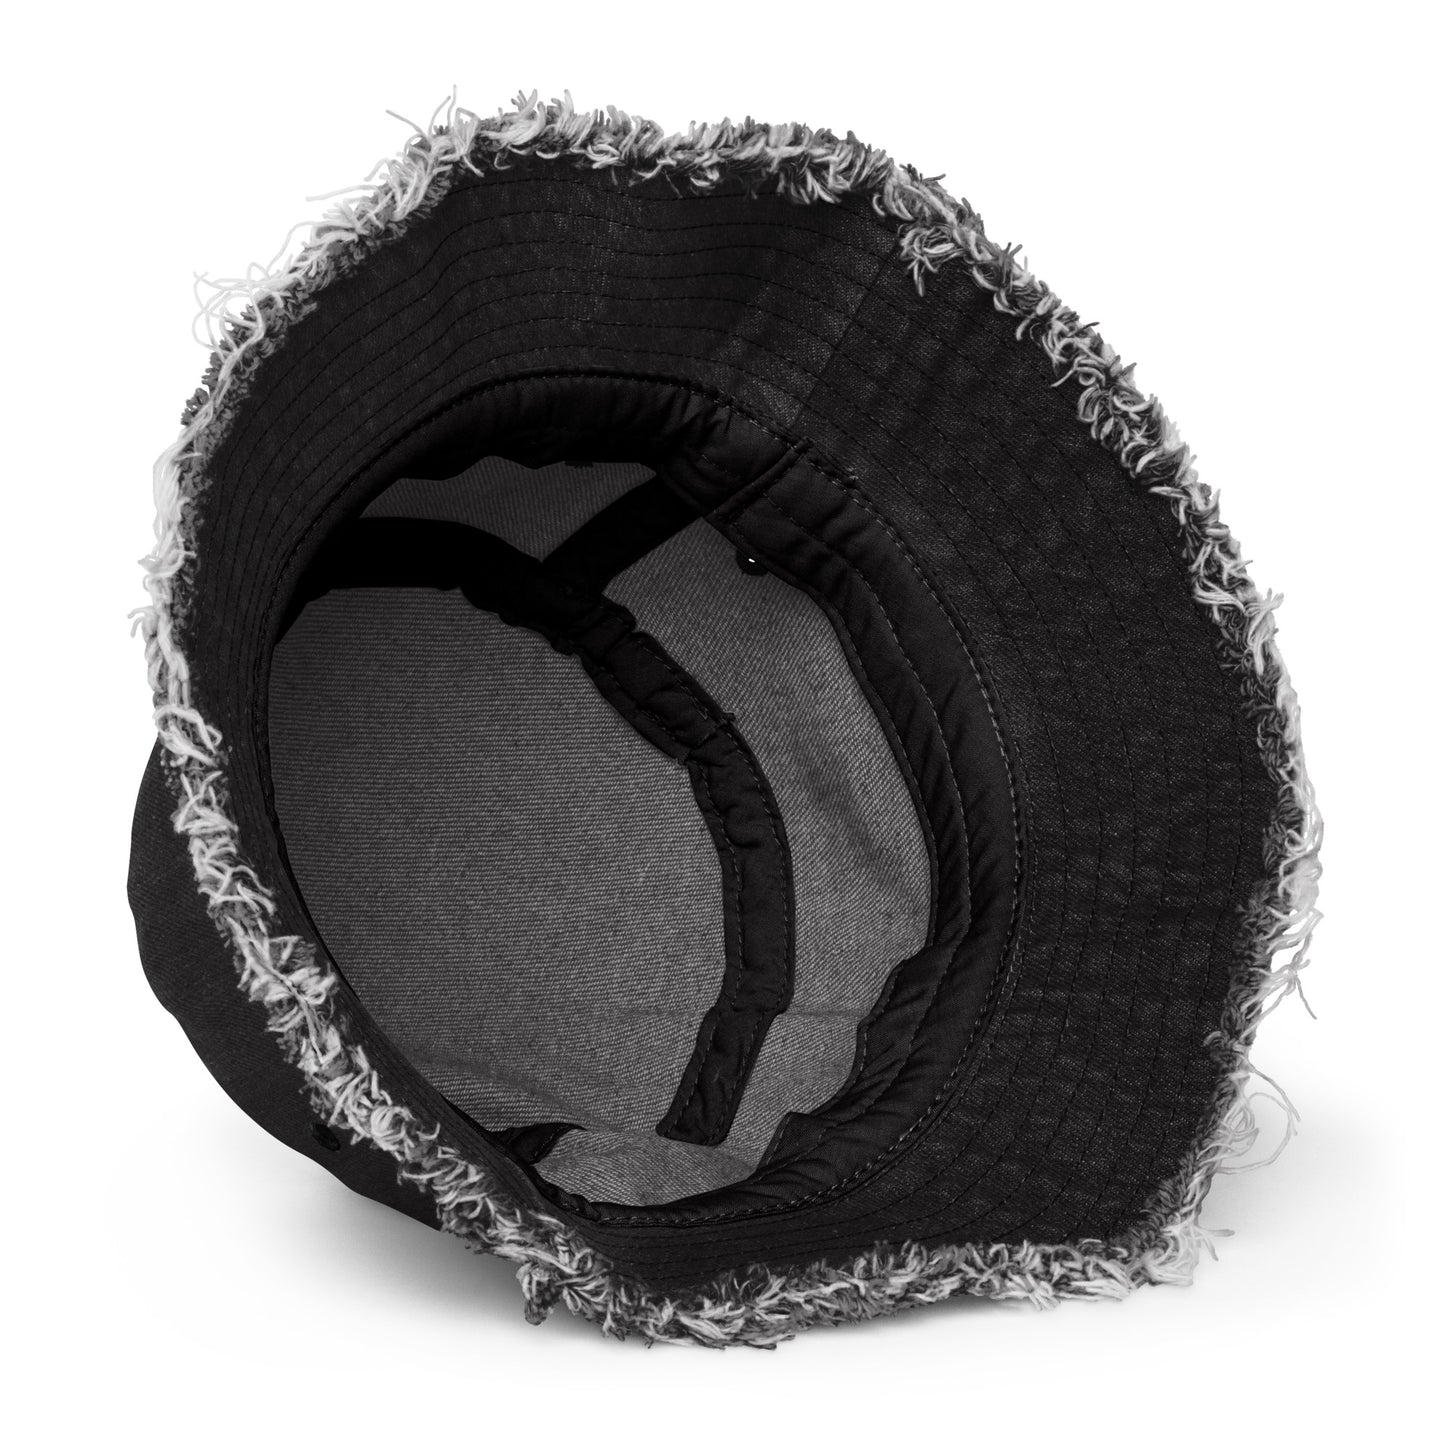 Y008 - Topi baldi denim bermasalah (hitam)